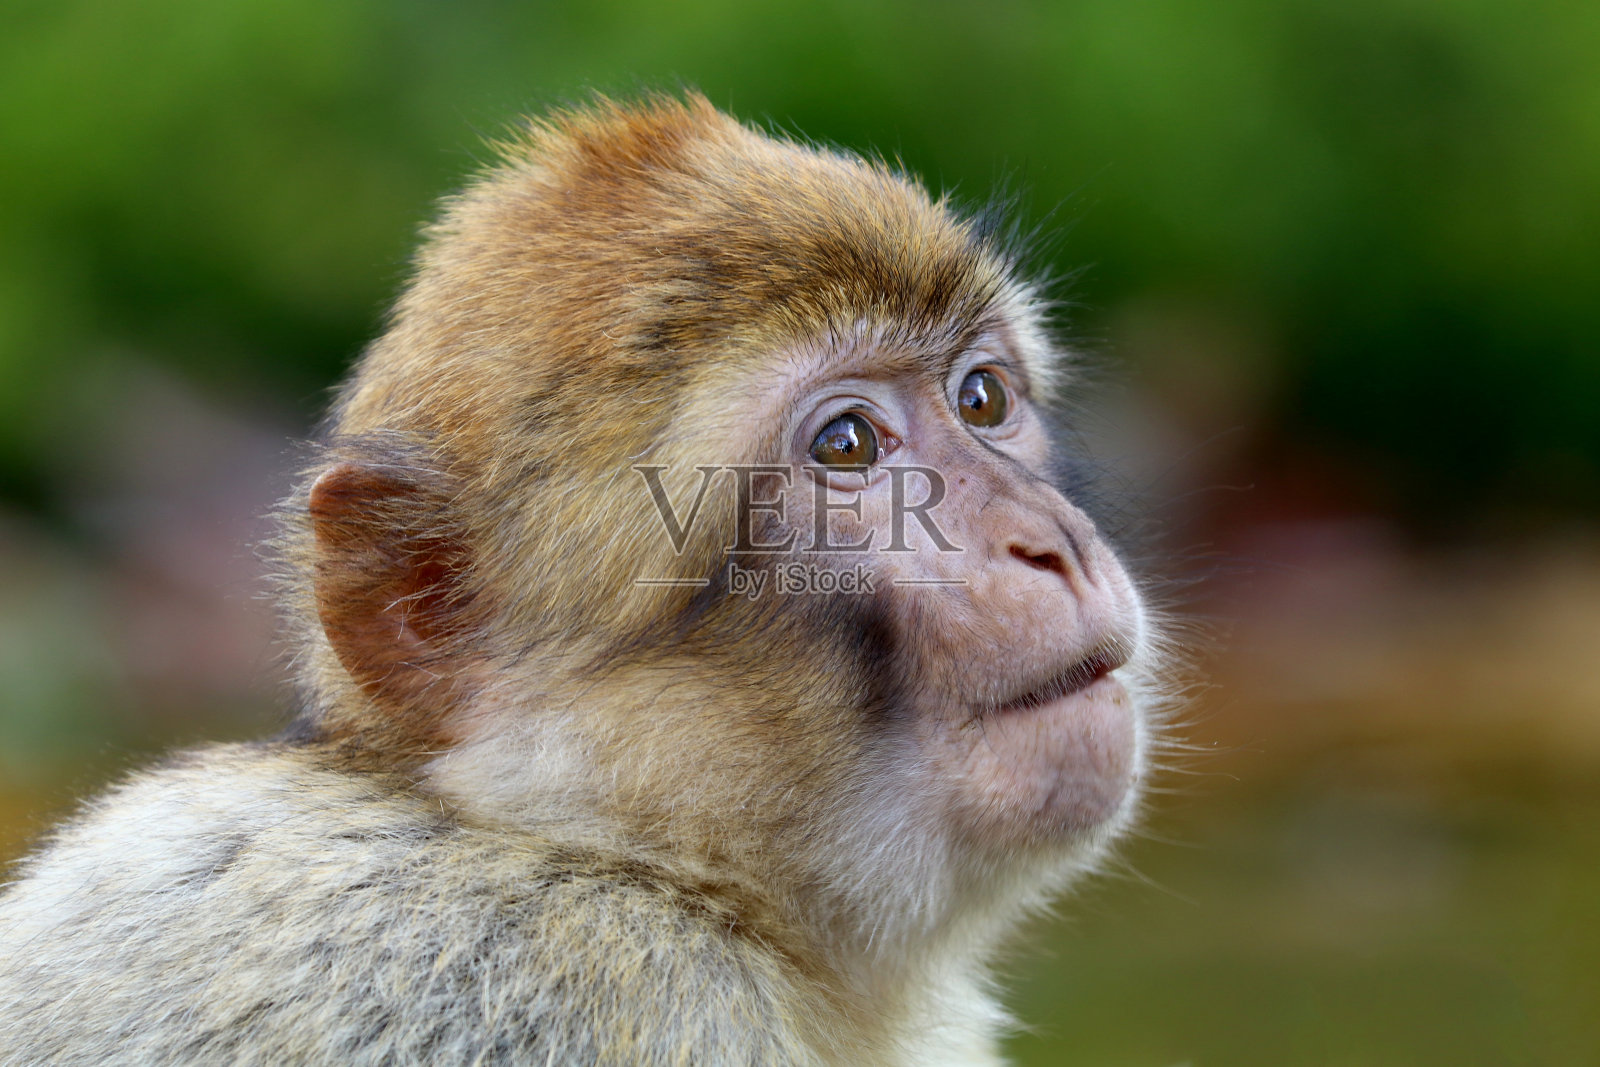 巴巴利猕猴照片摄影图片